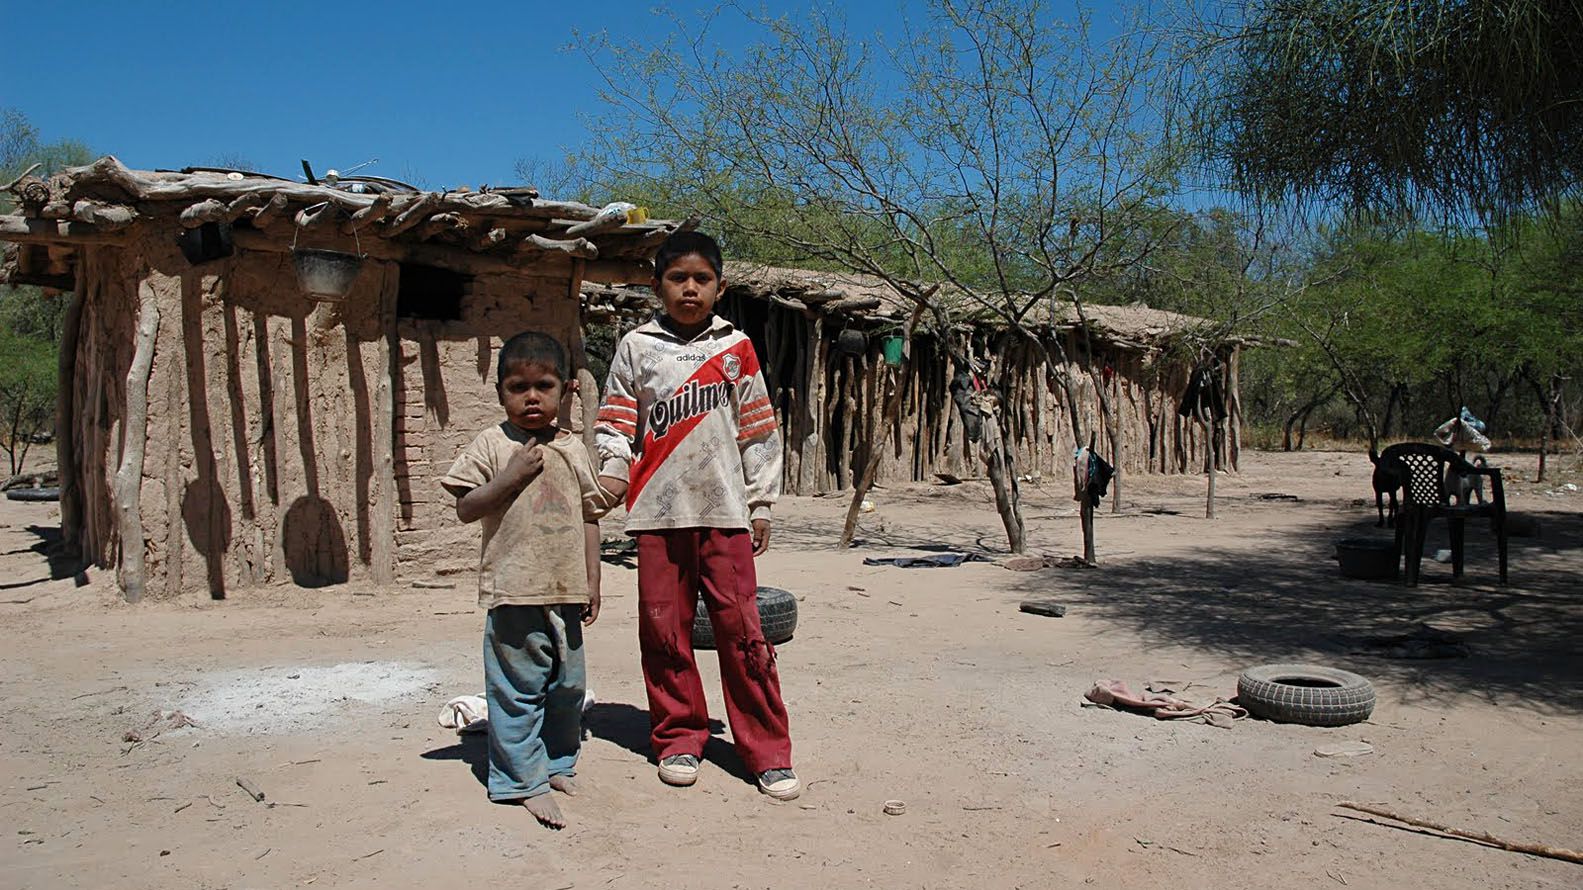 El 56% de los chicos menores de 14 años del país está en la pobreza